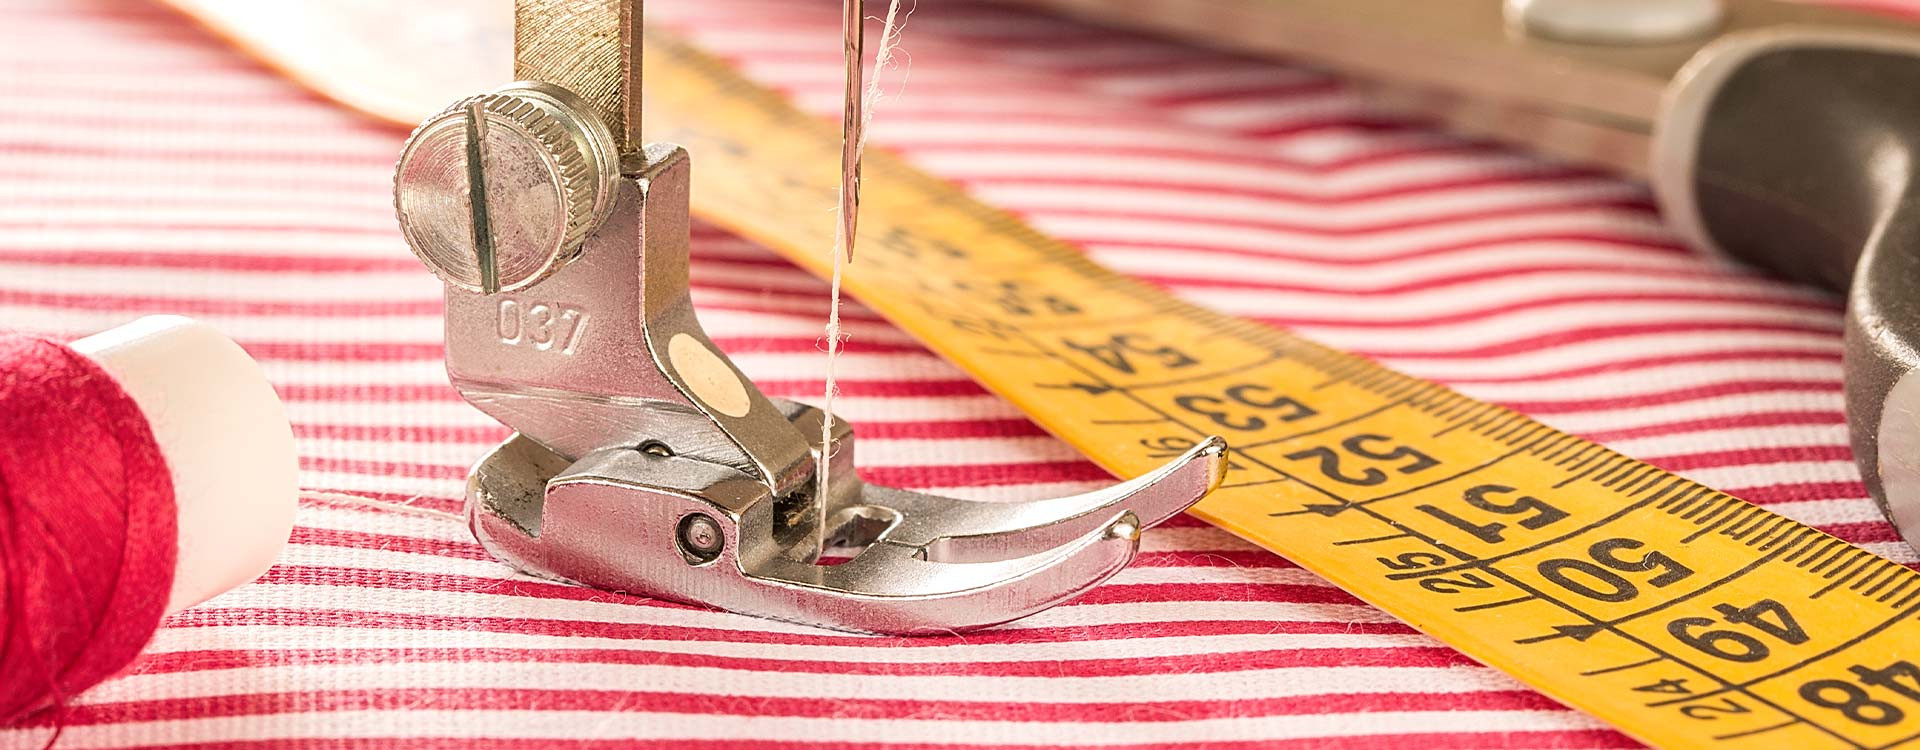 Tipos de agujas para coser: guía completa para cada tipo de tela | TejidosOnline.com